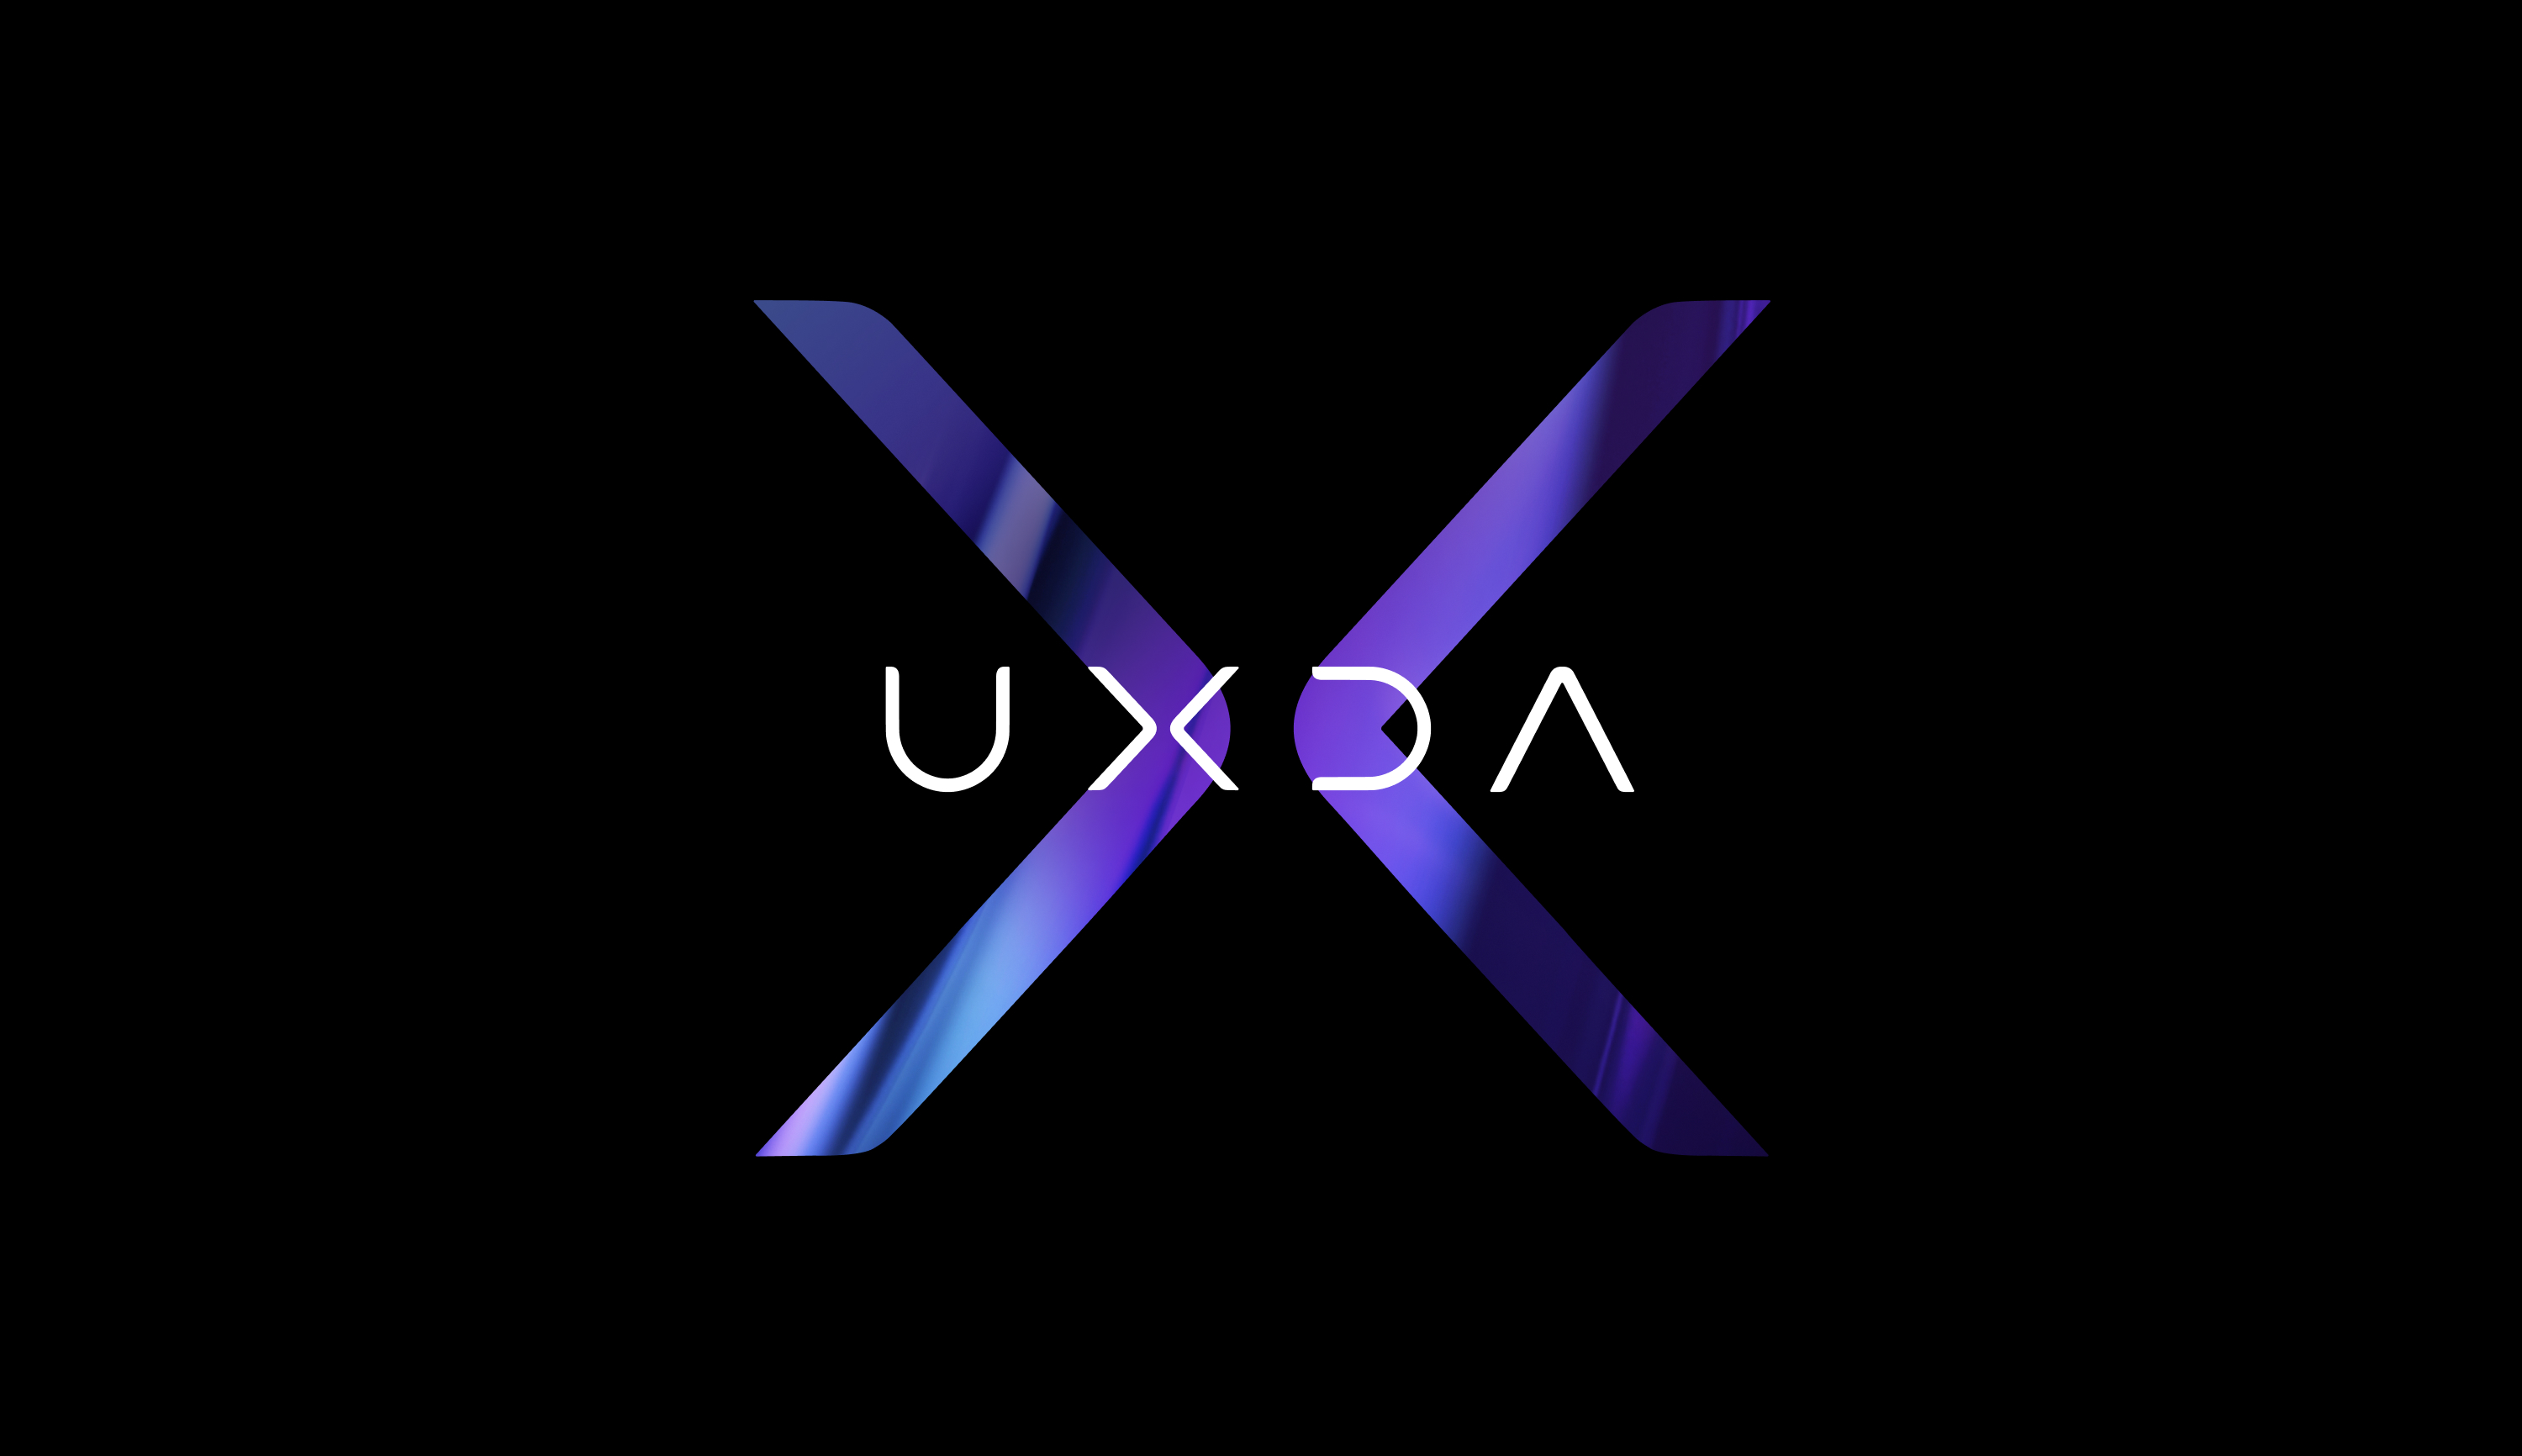 UXDA logo